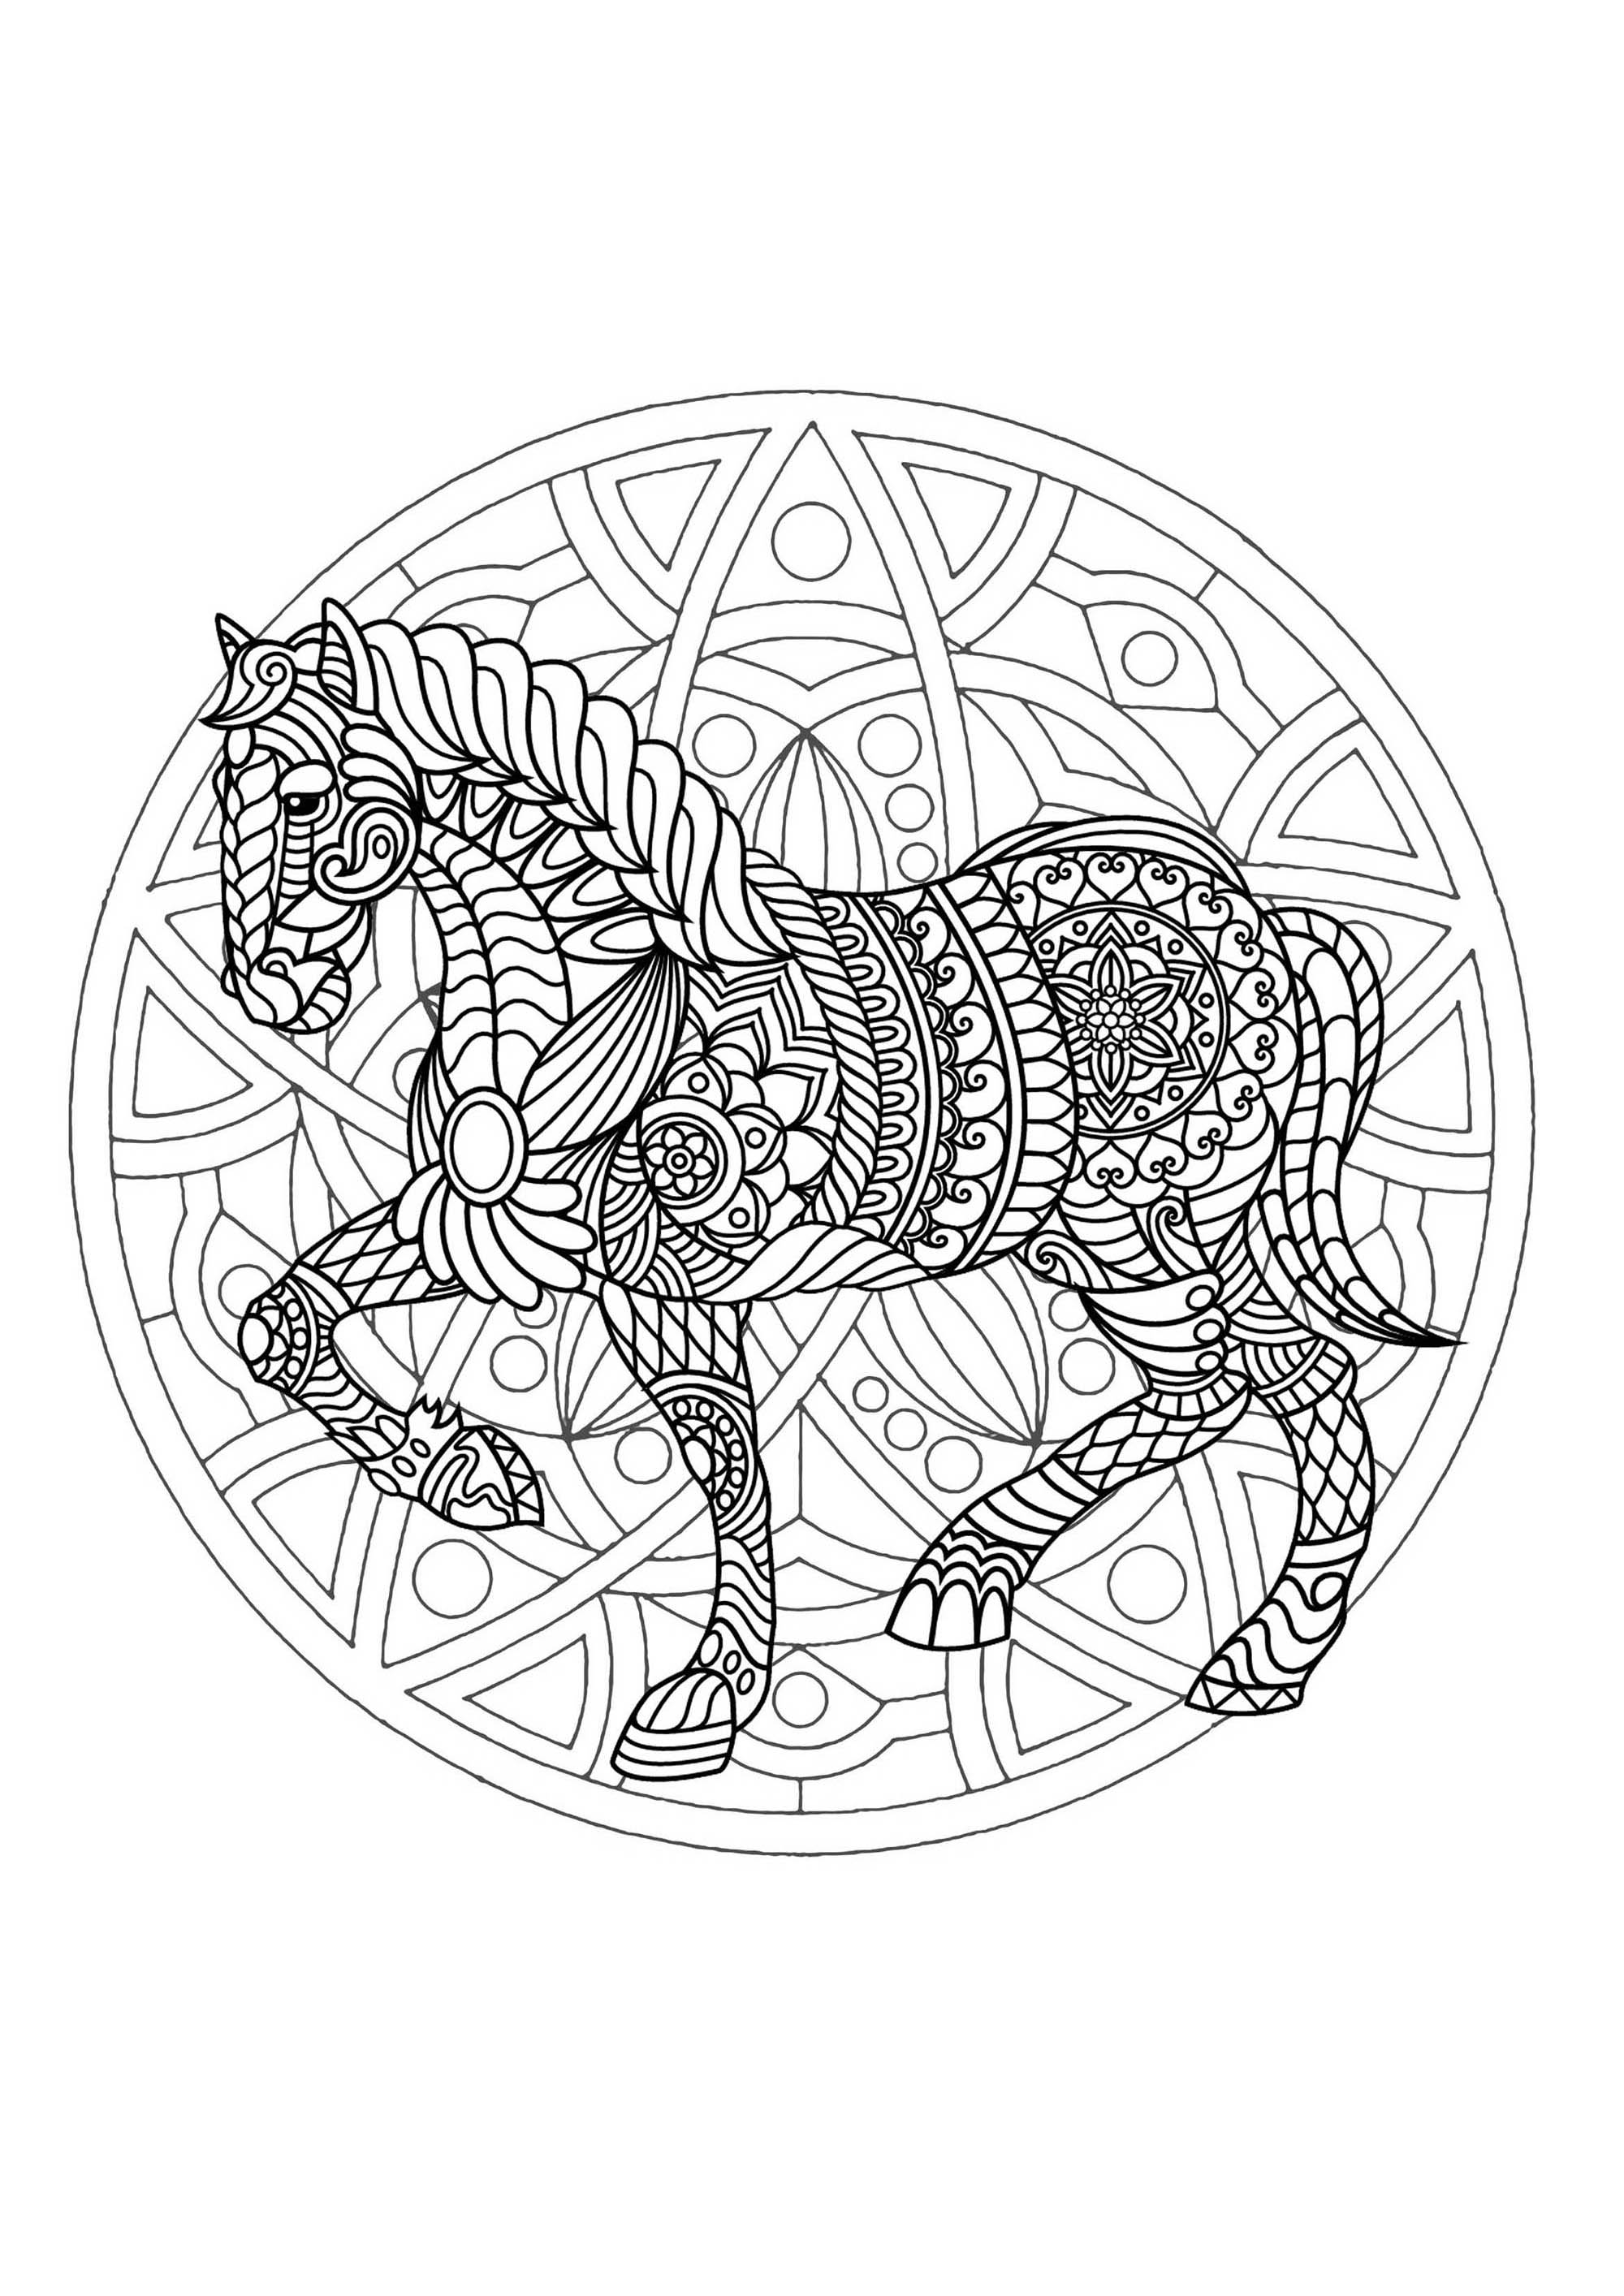 Un magnifico Mandala da colorare con un cavallo, di grande qualità e originalità. Sta a voi scegliere i colori più adatti.